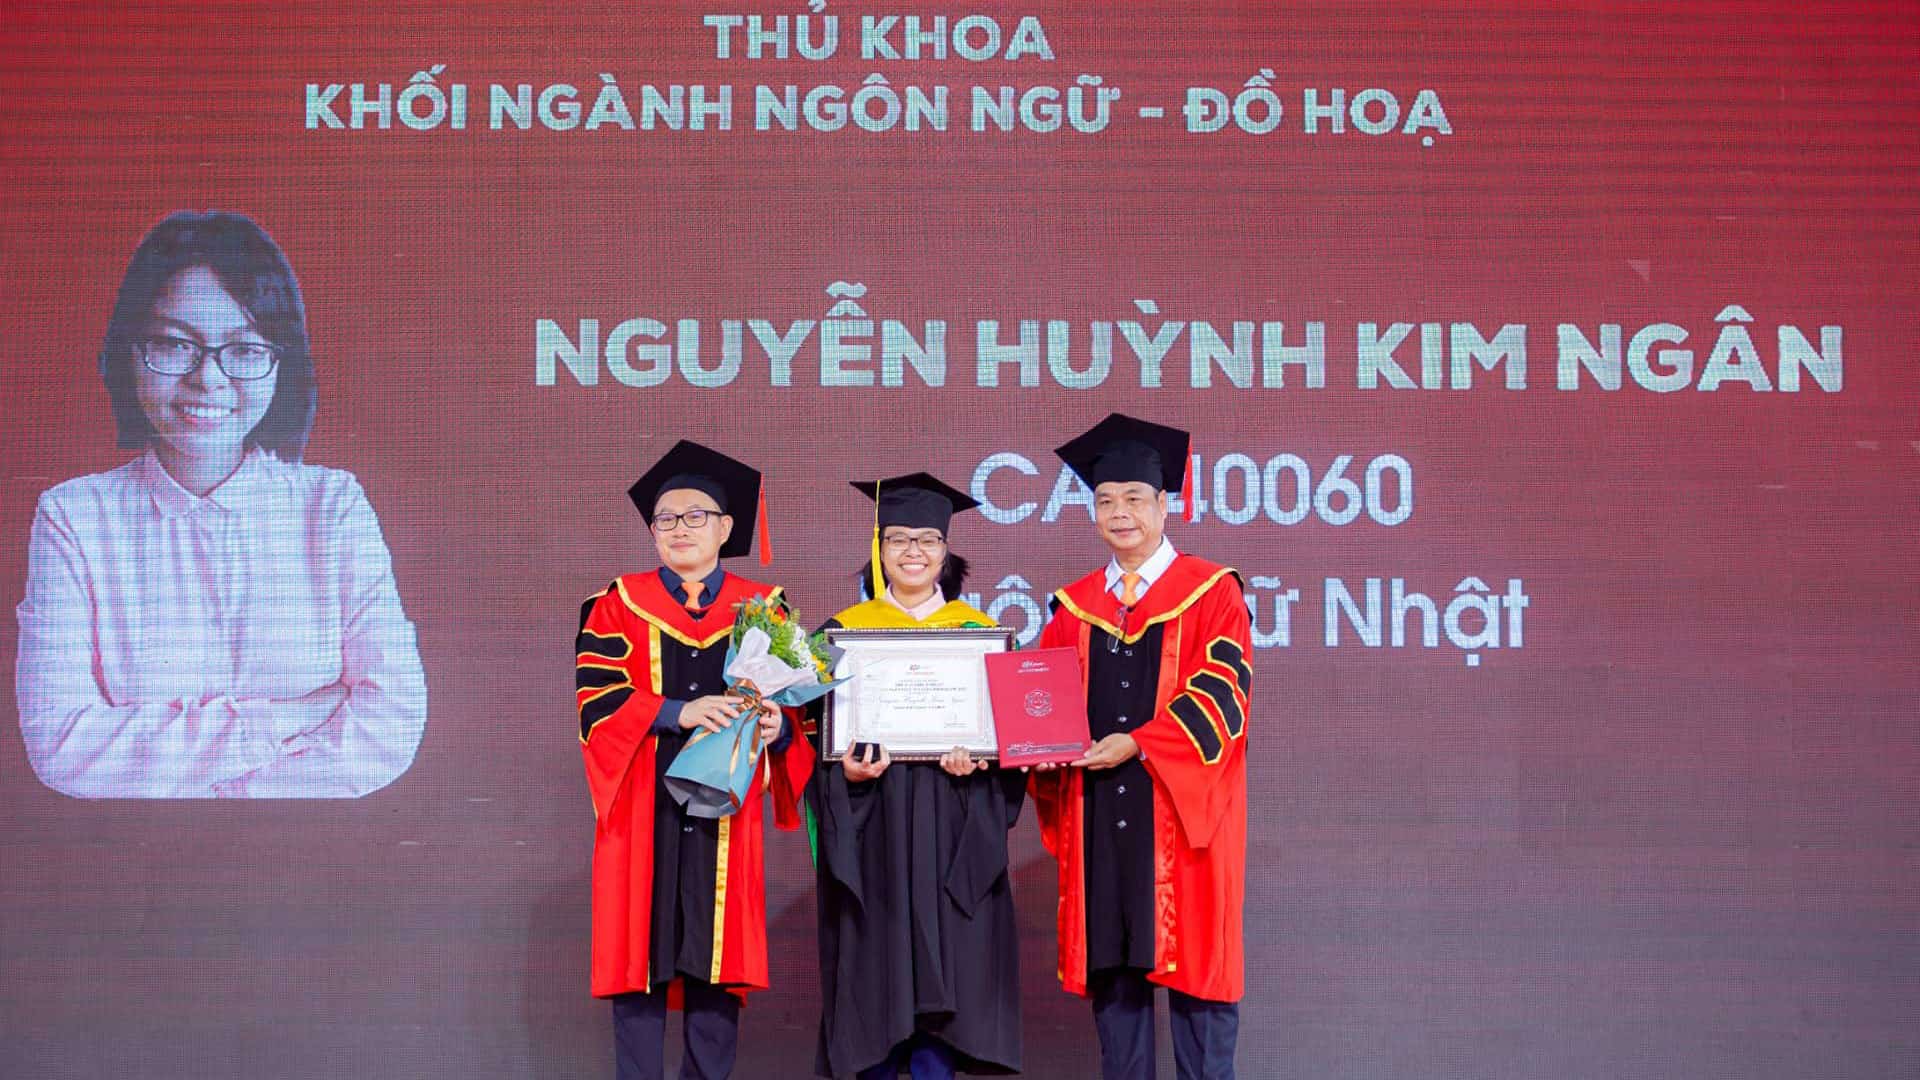 Nguyễn Huỳnh Kim Ngân - Thủ khoa Tốt nghiệp 2022: Niềm đam mê Tiếng Nhật và nỗ lực đã đưa mình đến ngày hôm nay